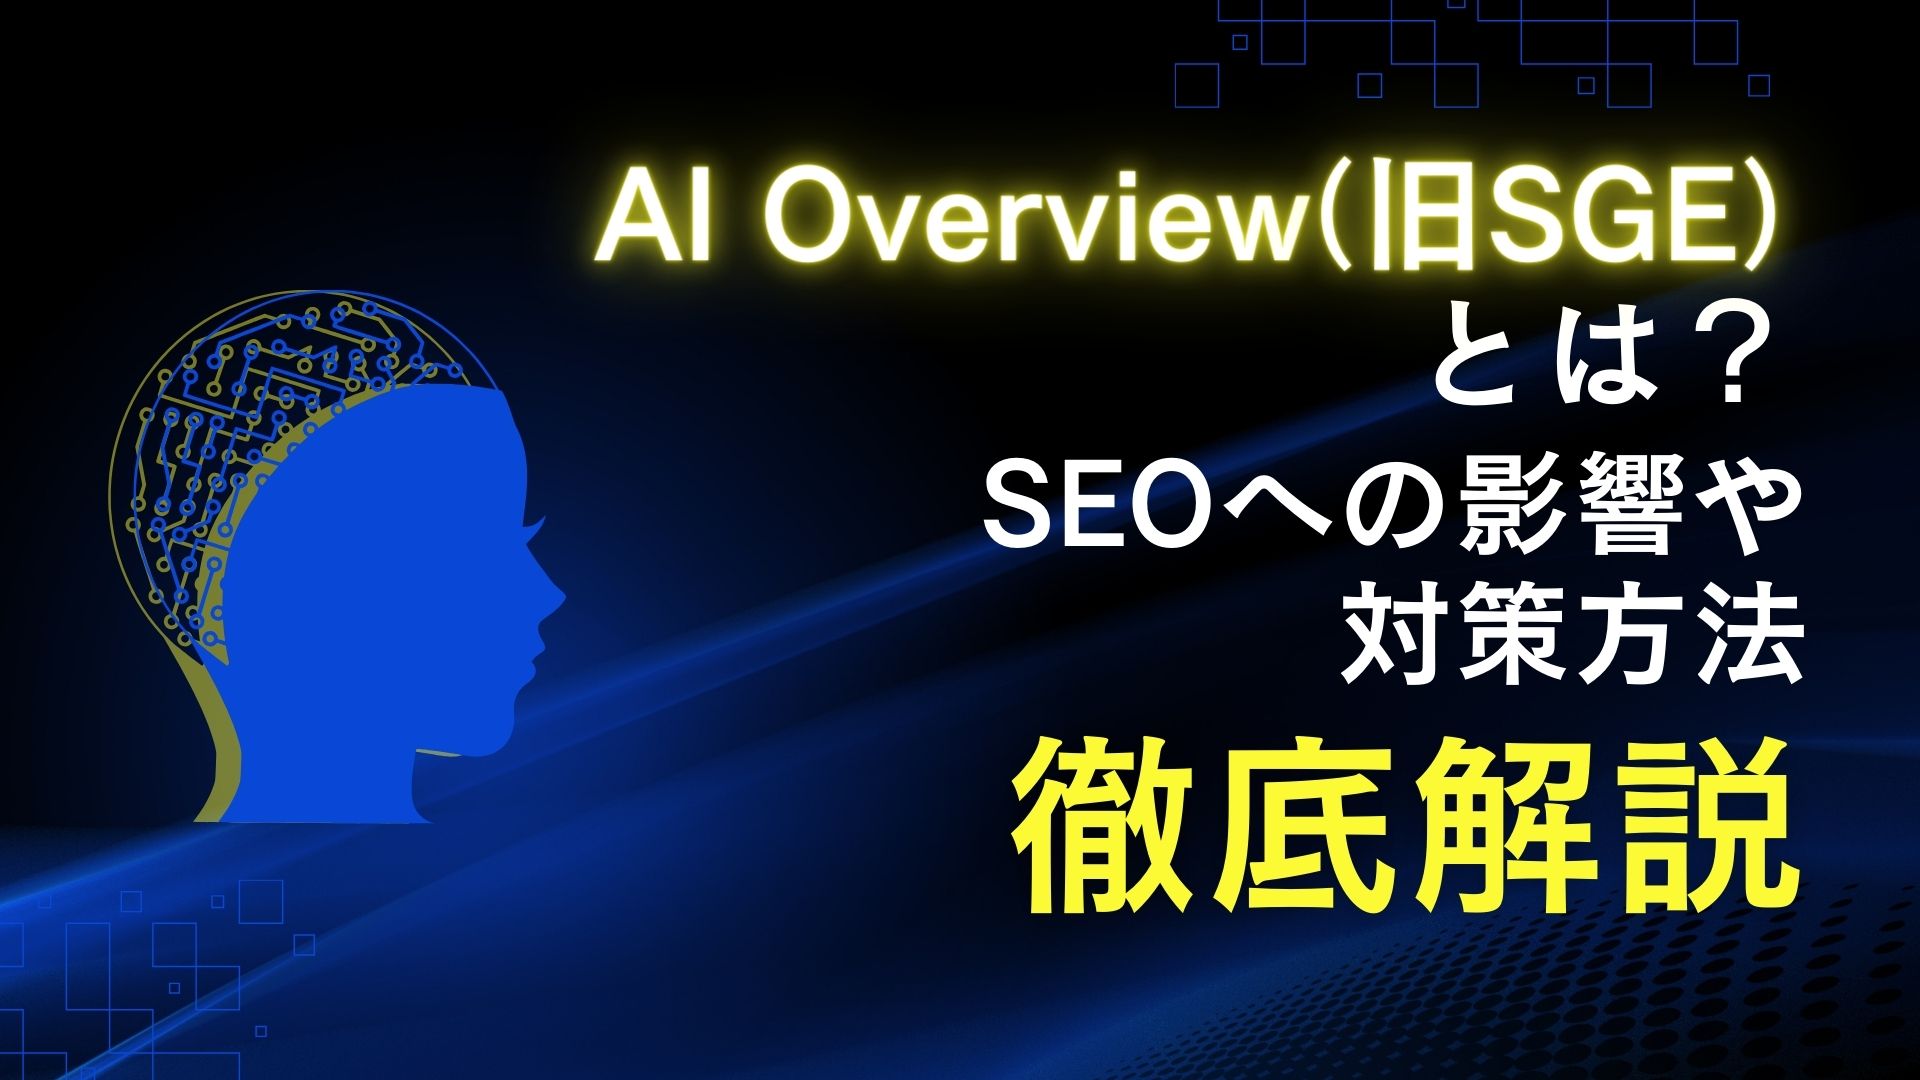 AI-Overview SGE SEO 影響 対策方法 徹底解説